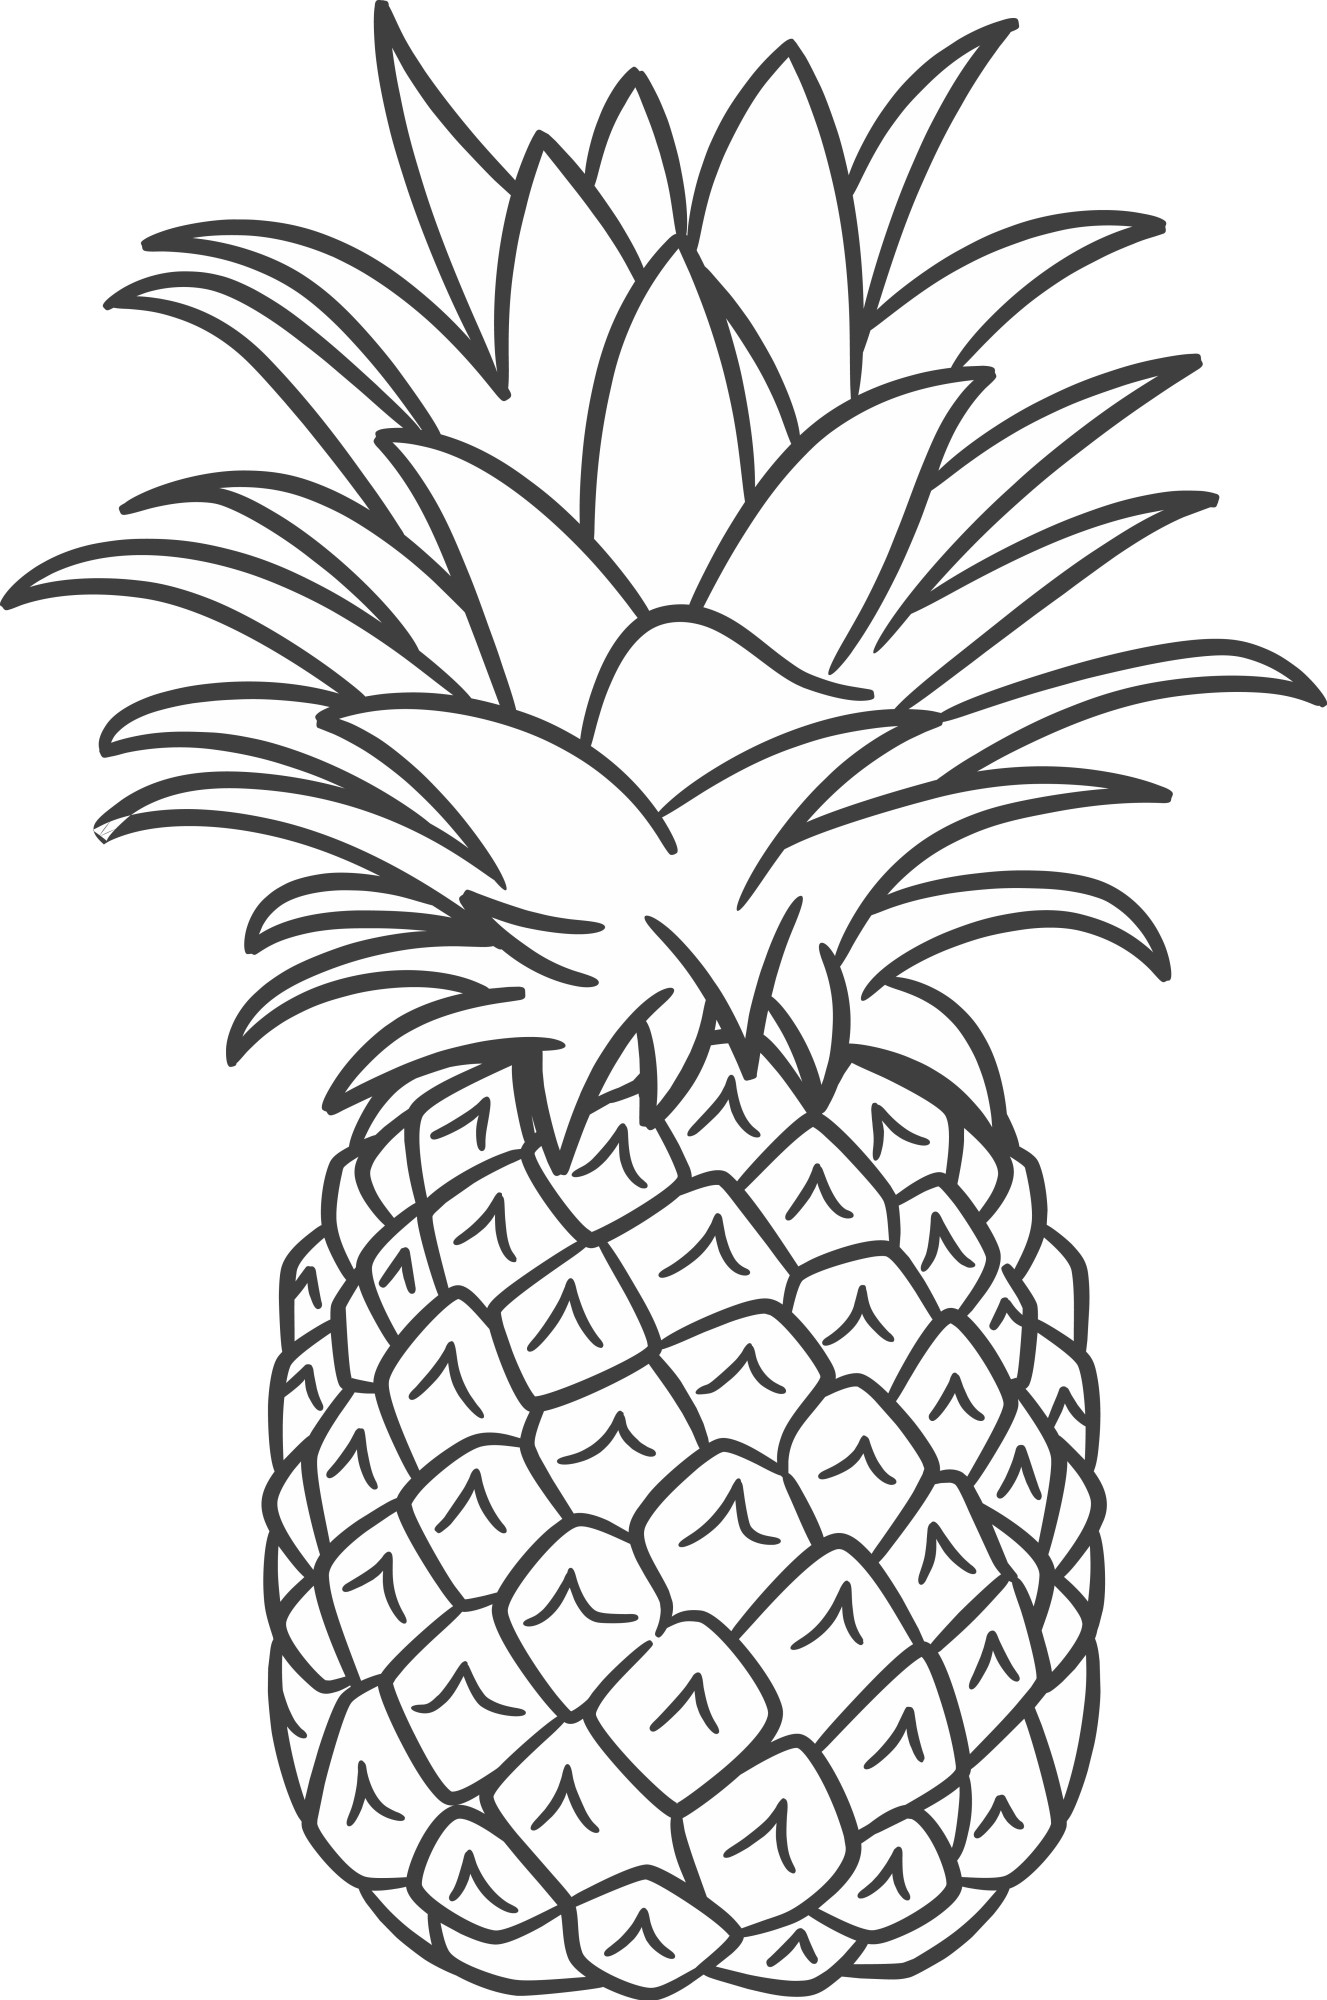 Раскраска для детей: вкусный фрукт ананас